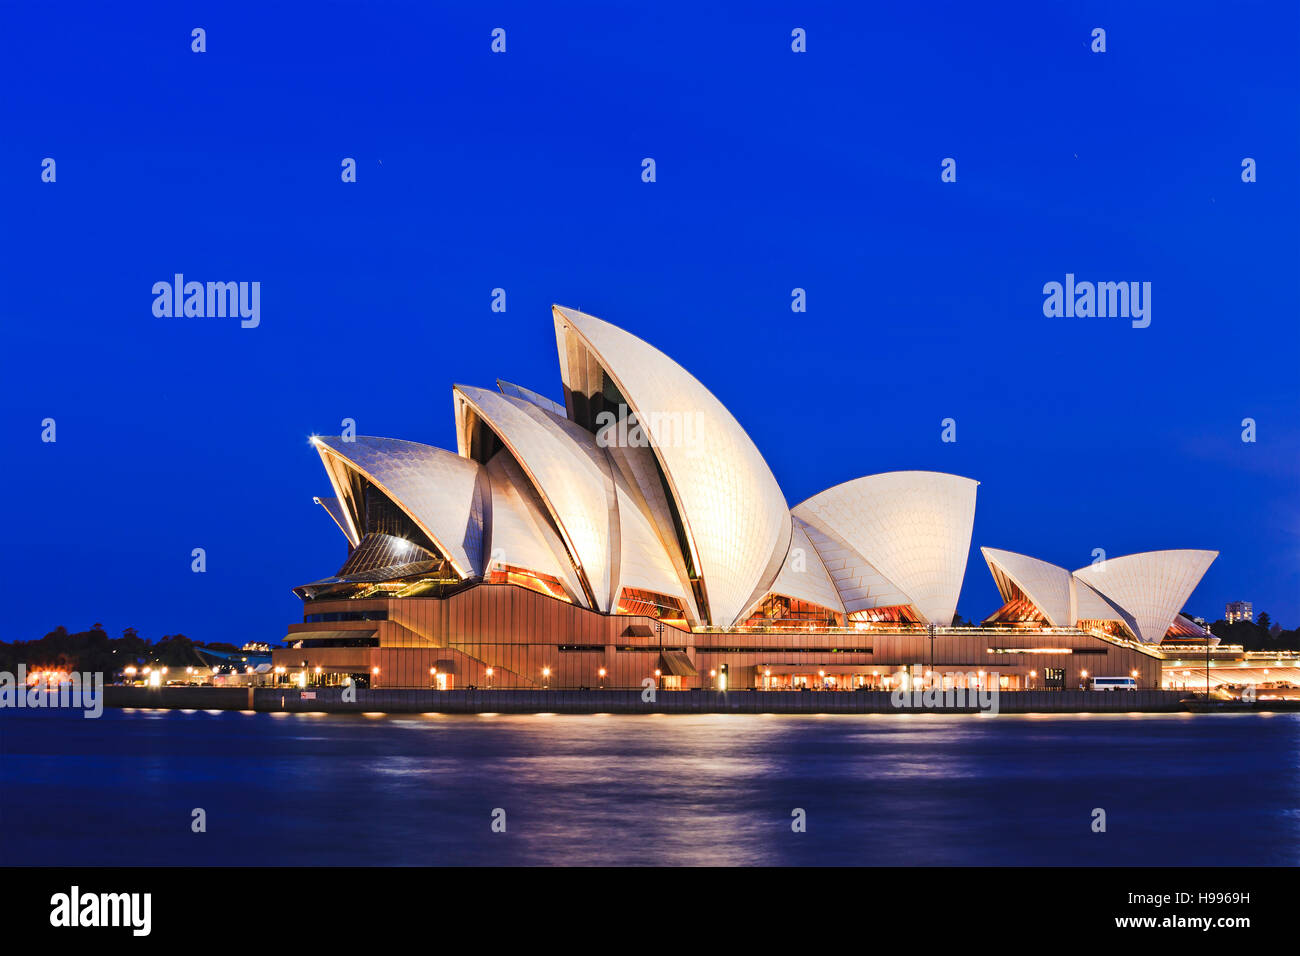 Sydney, Australia - 15 November 2016: Iconic worlds' buildings - Sydney Opera house in full glory at sunset brightly illuminated Stock Photo